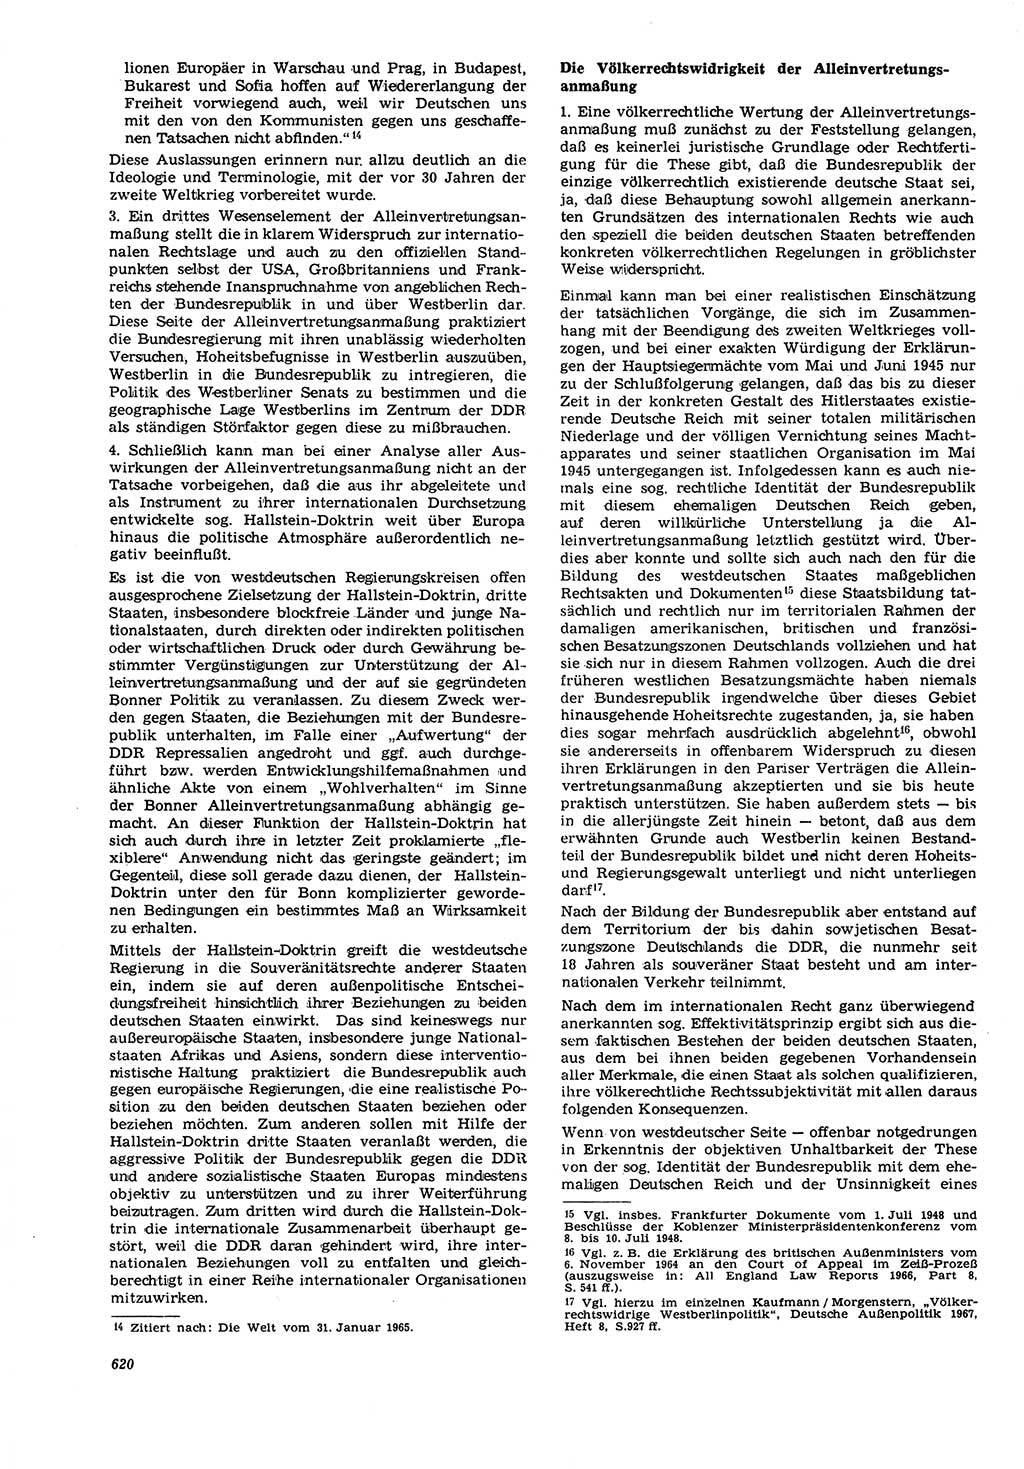 Neue Justiz (NJ), Zeitschrift für Recht und Rechtswissenschaft [Deutsche Demokratische Republik (DDR)], 21. Jahrgang 1967, Seite 620 (NJ DDR 1967, S. 620)